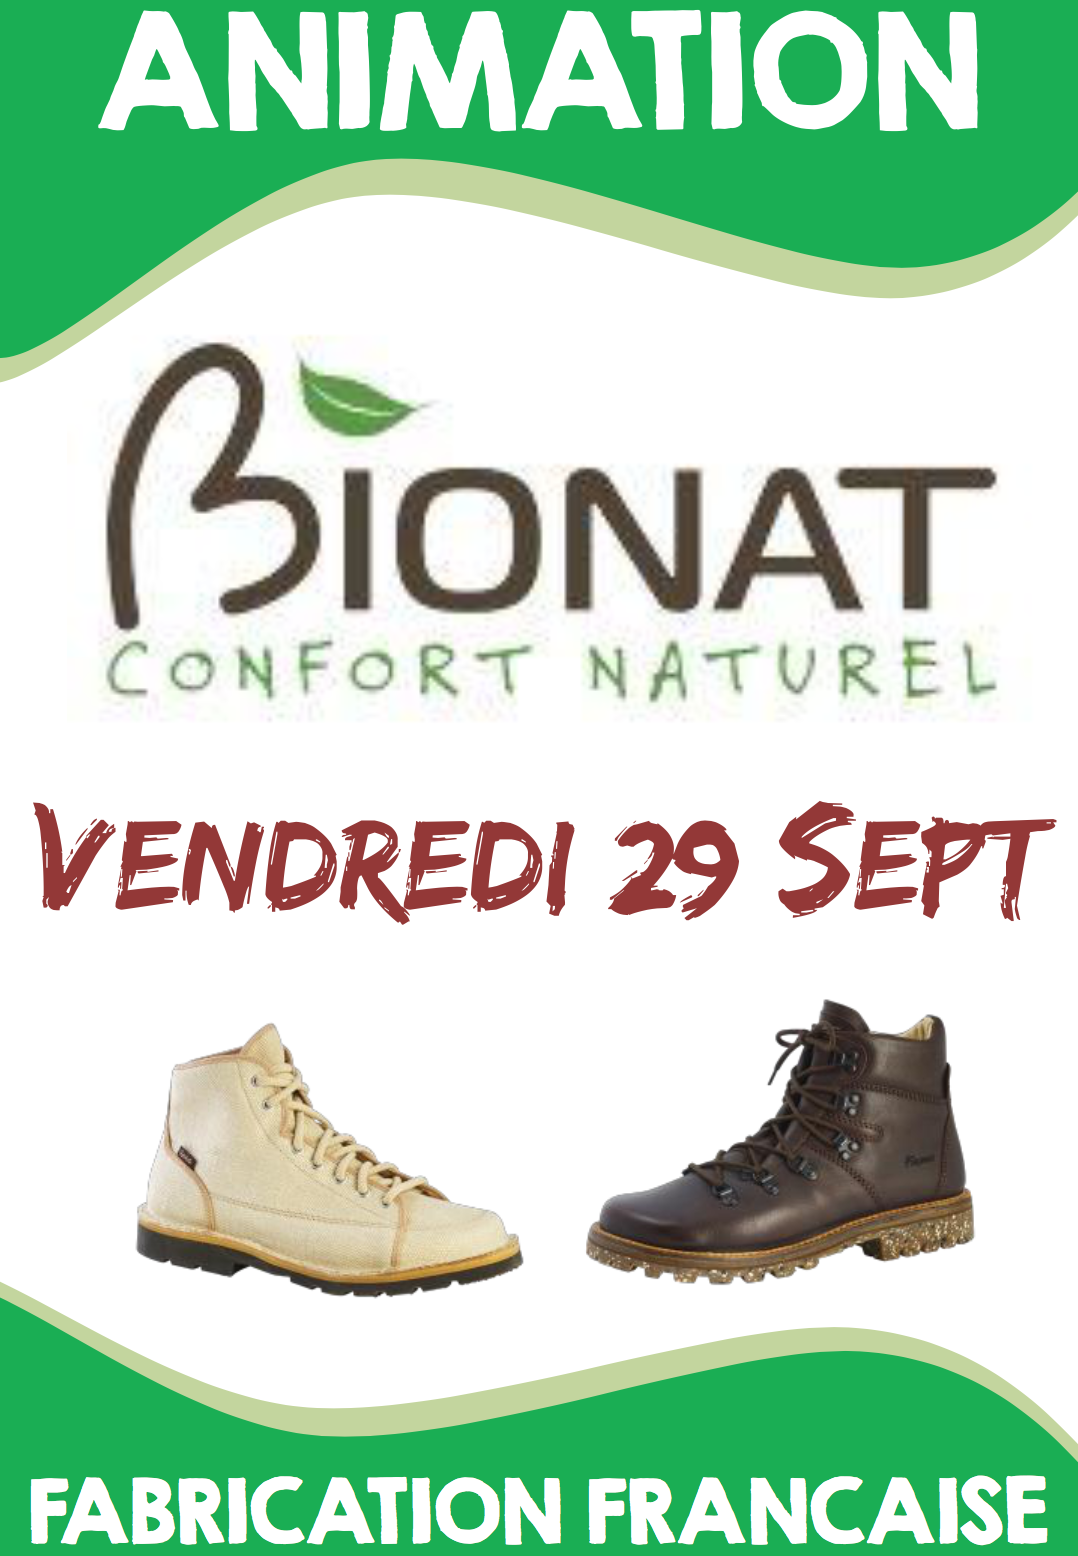 Chaussures Bionat à découvrir vendredi 29 septembre